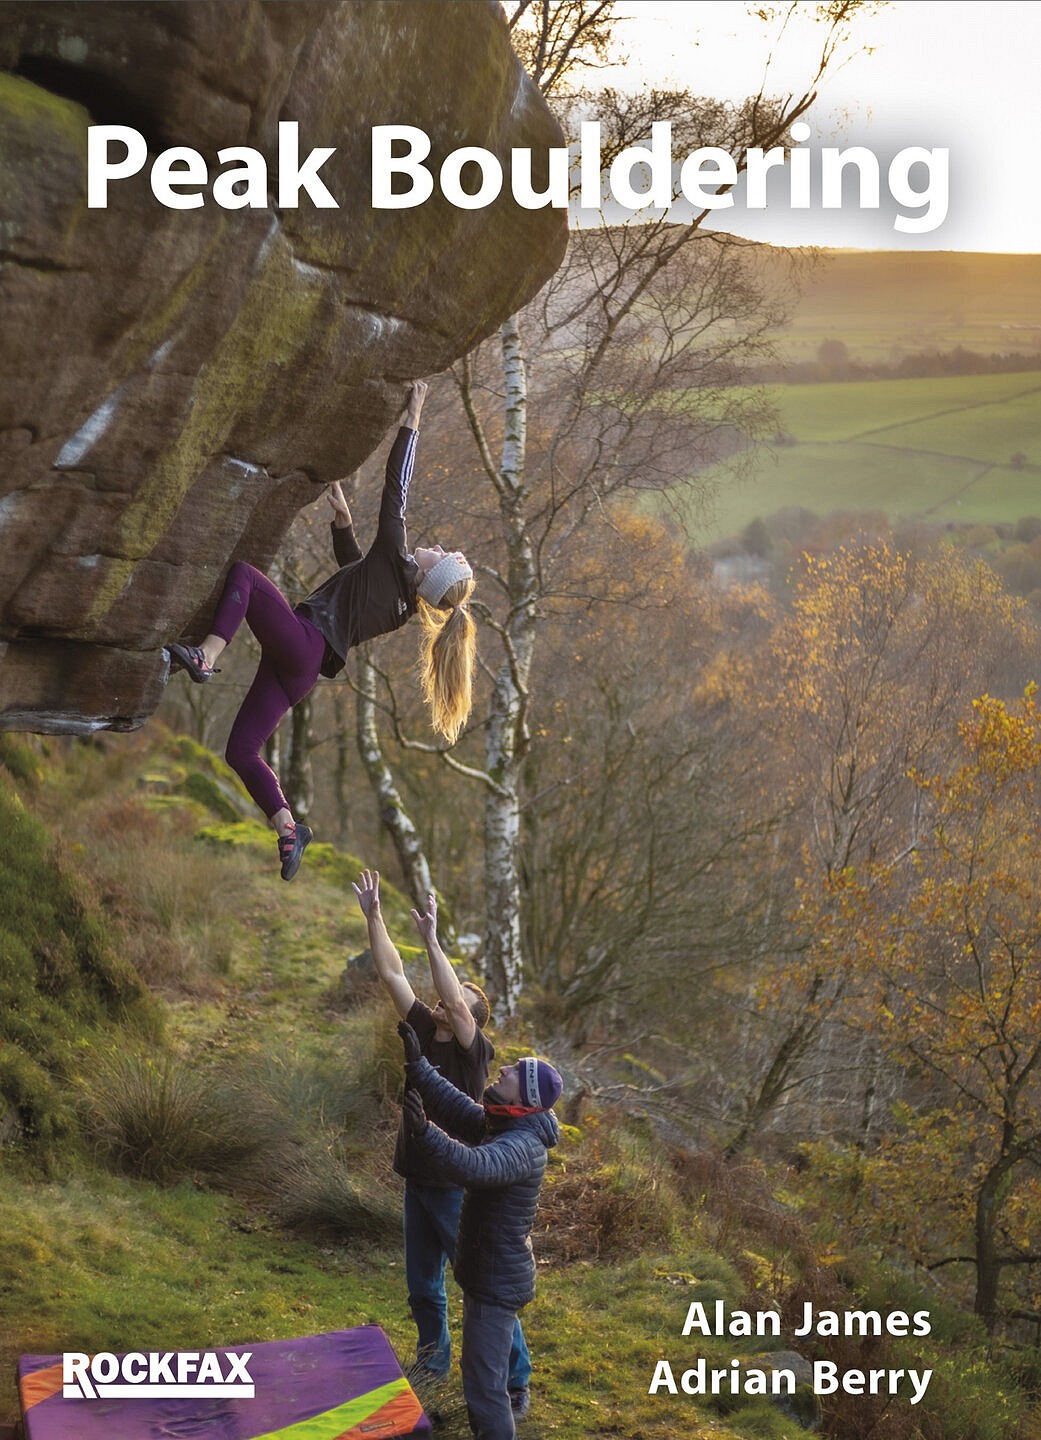 Peak Bouldering Rockfax Cover  © Nick Brown